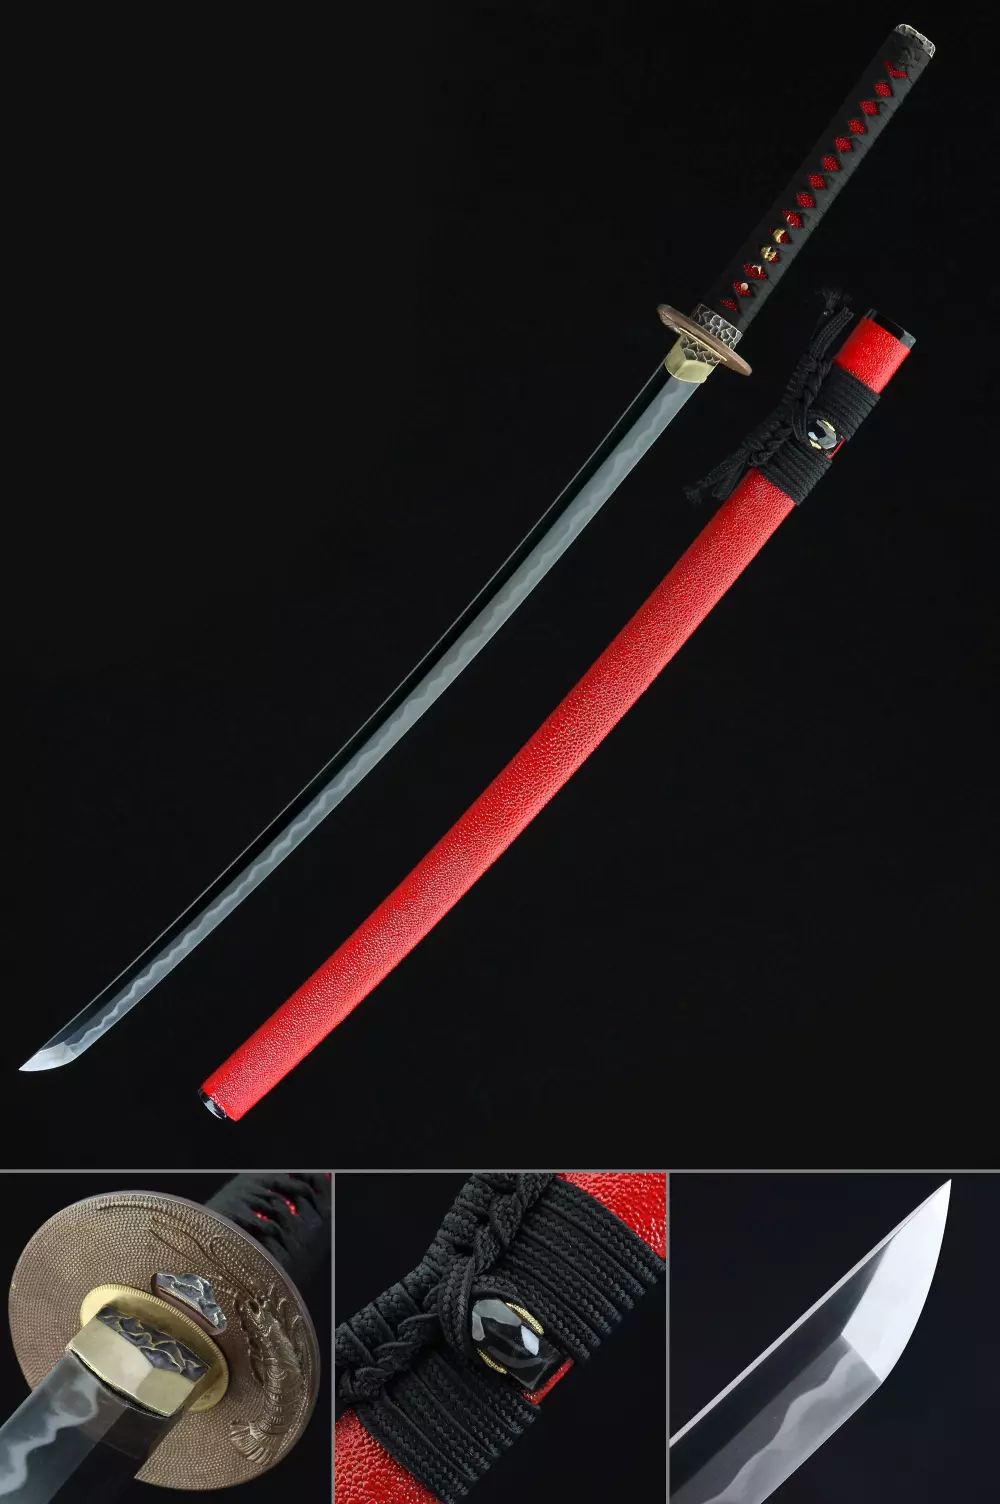 Tamahagane Katana Japanese Katana Sword Primary Tamahagane Steel TrueKatana